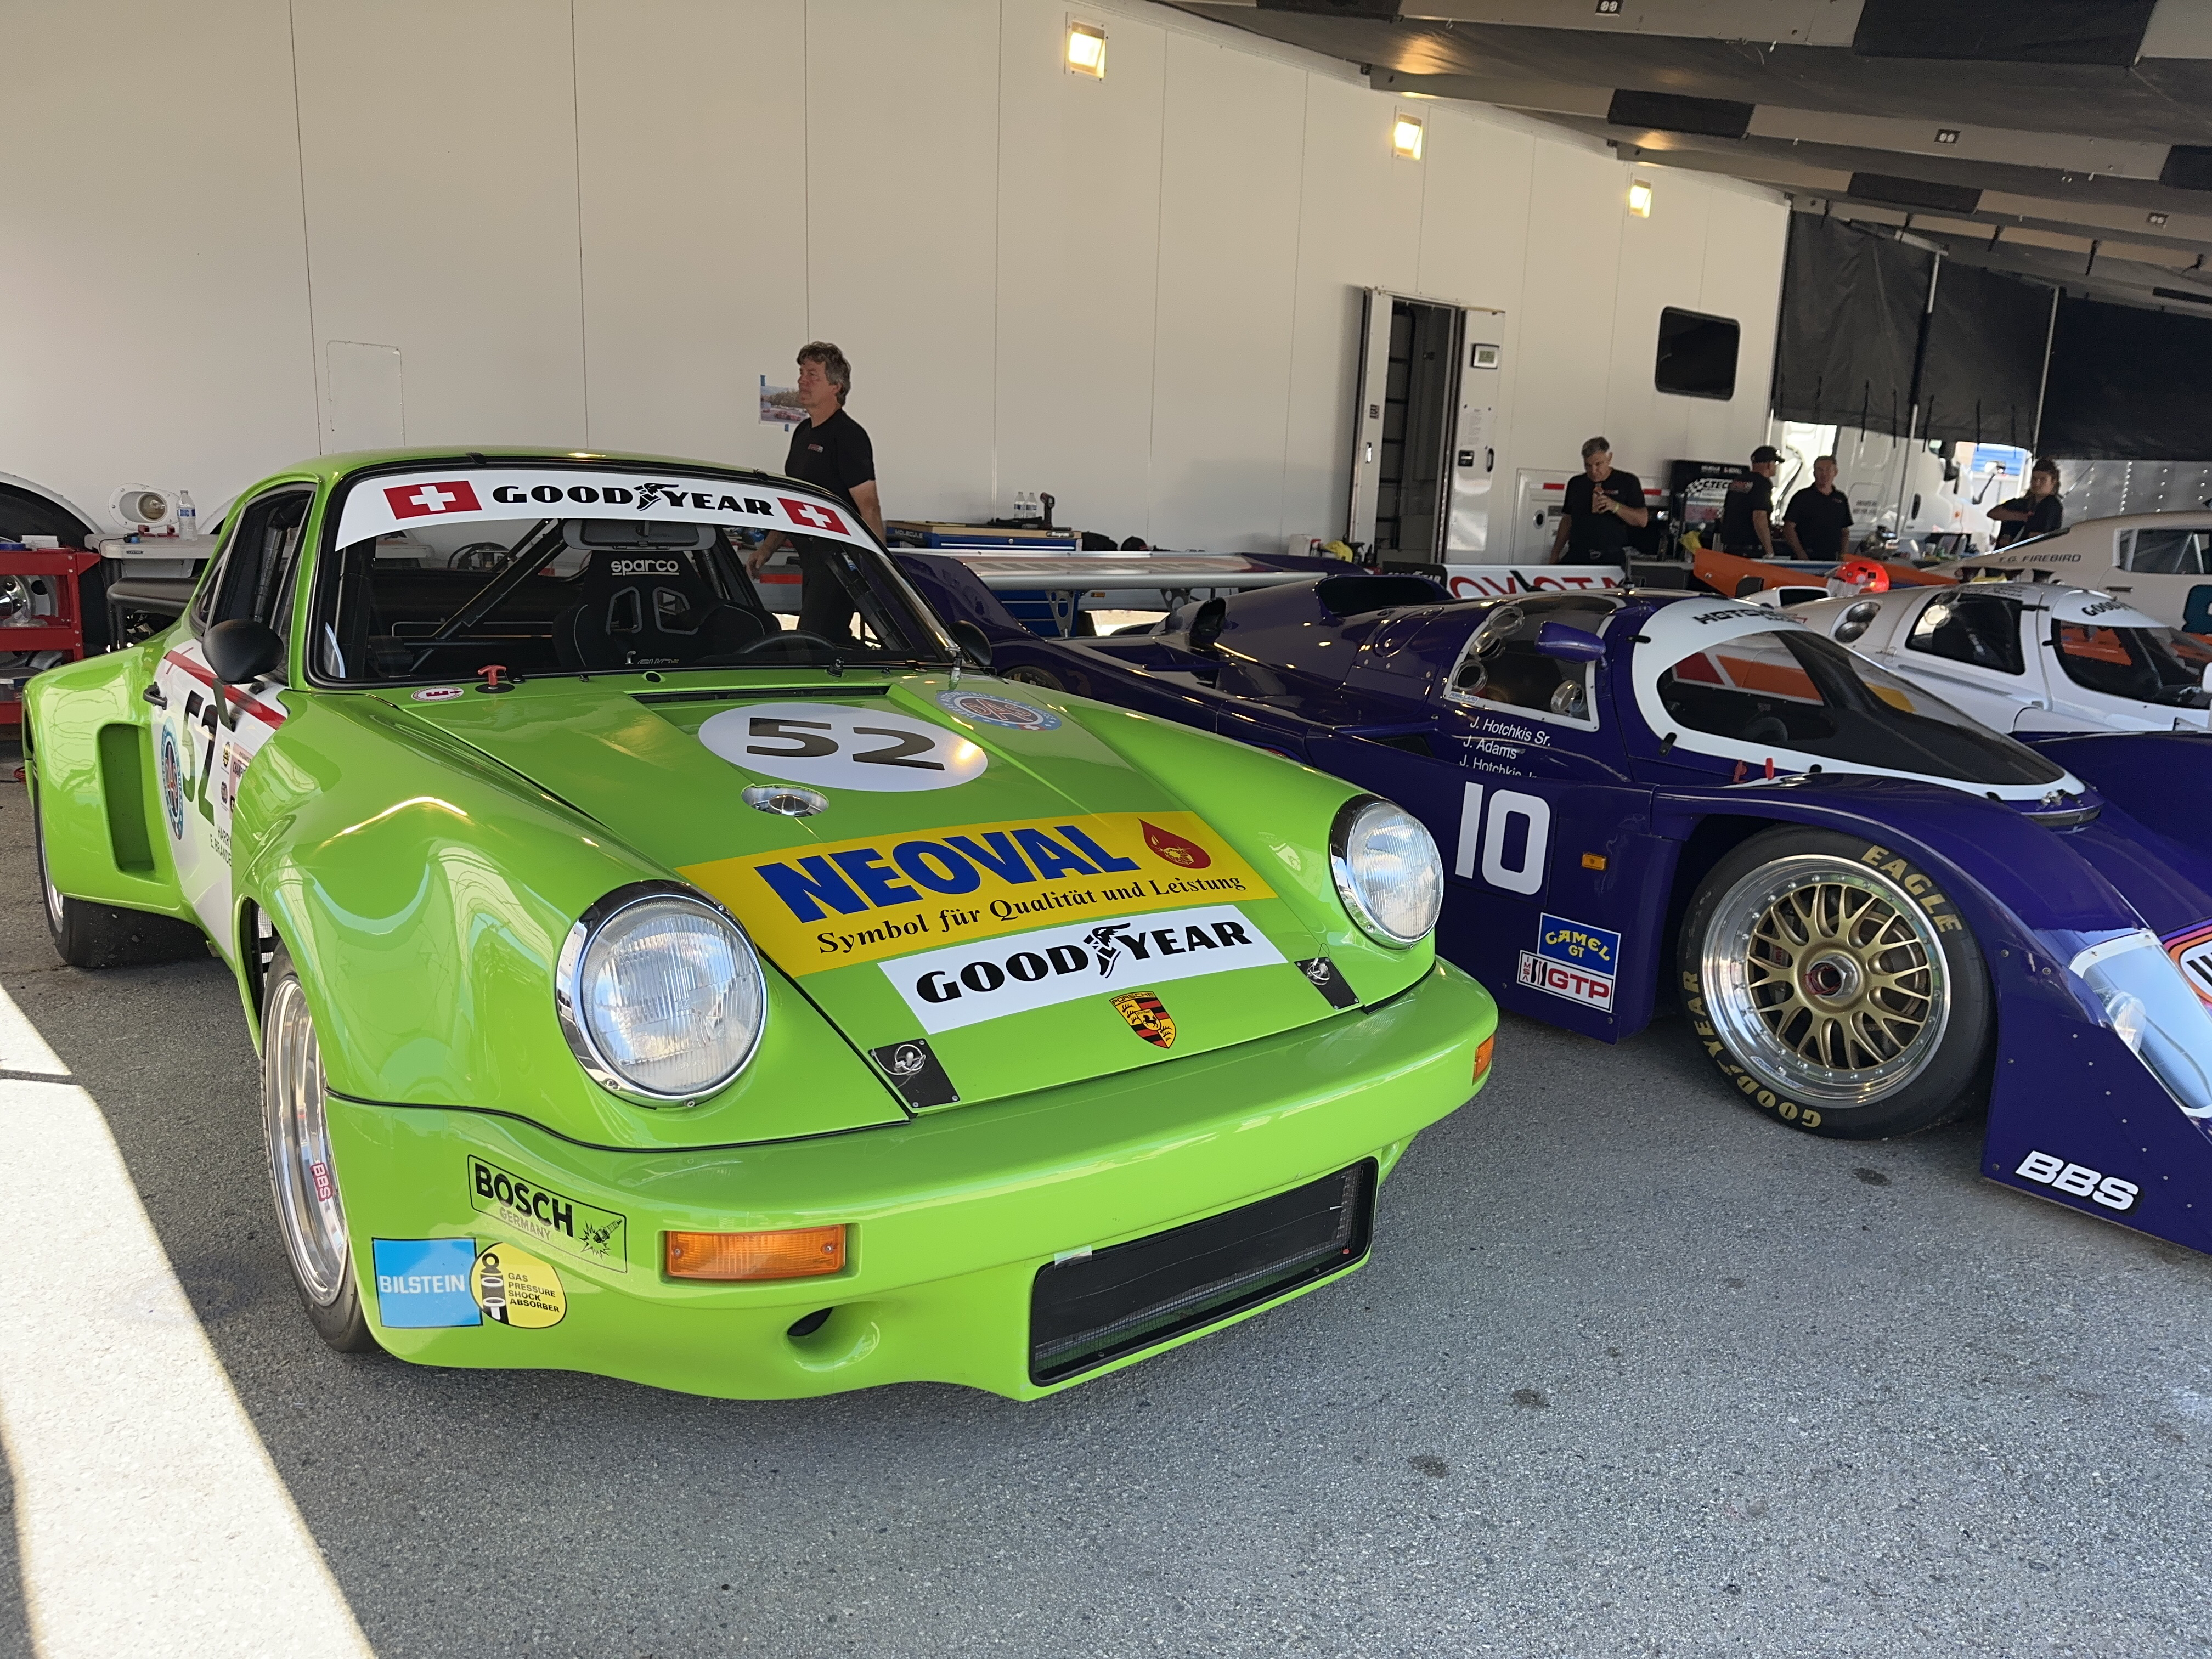 A very green Porsche 911 race car and a 70s era Porsche prototype racecar